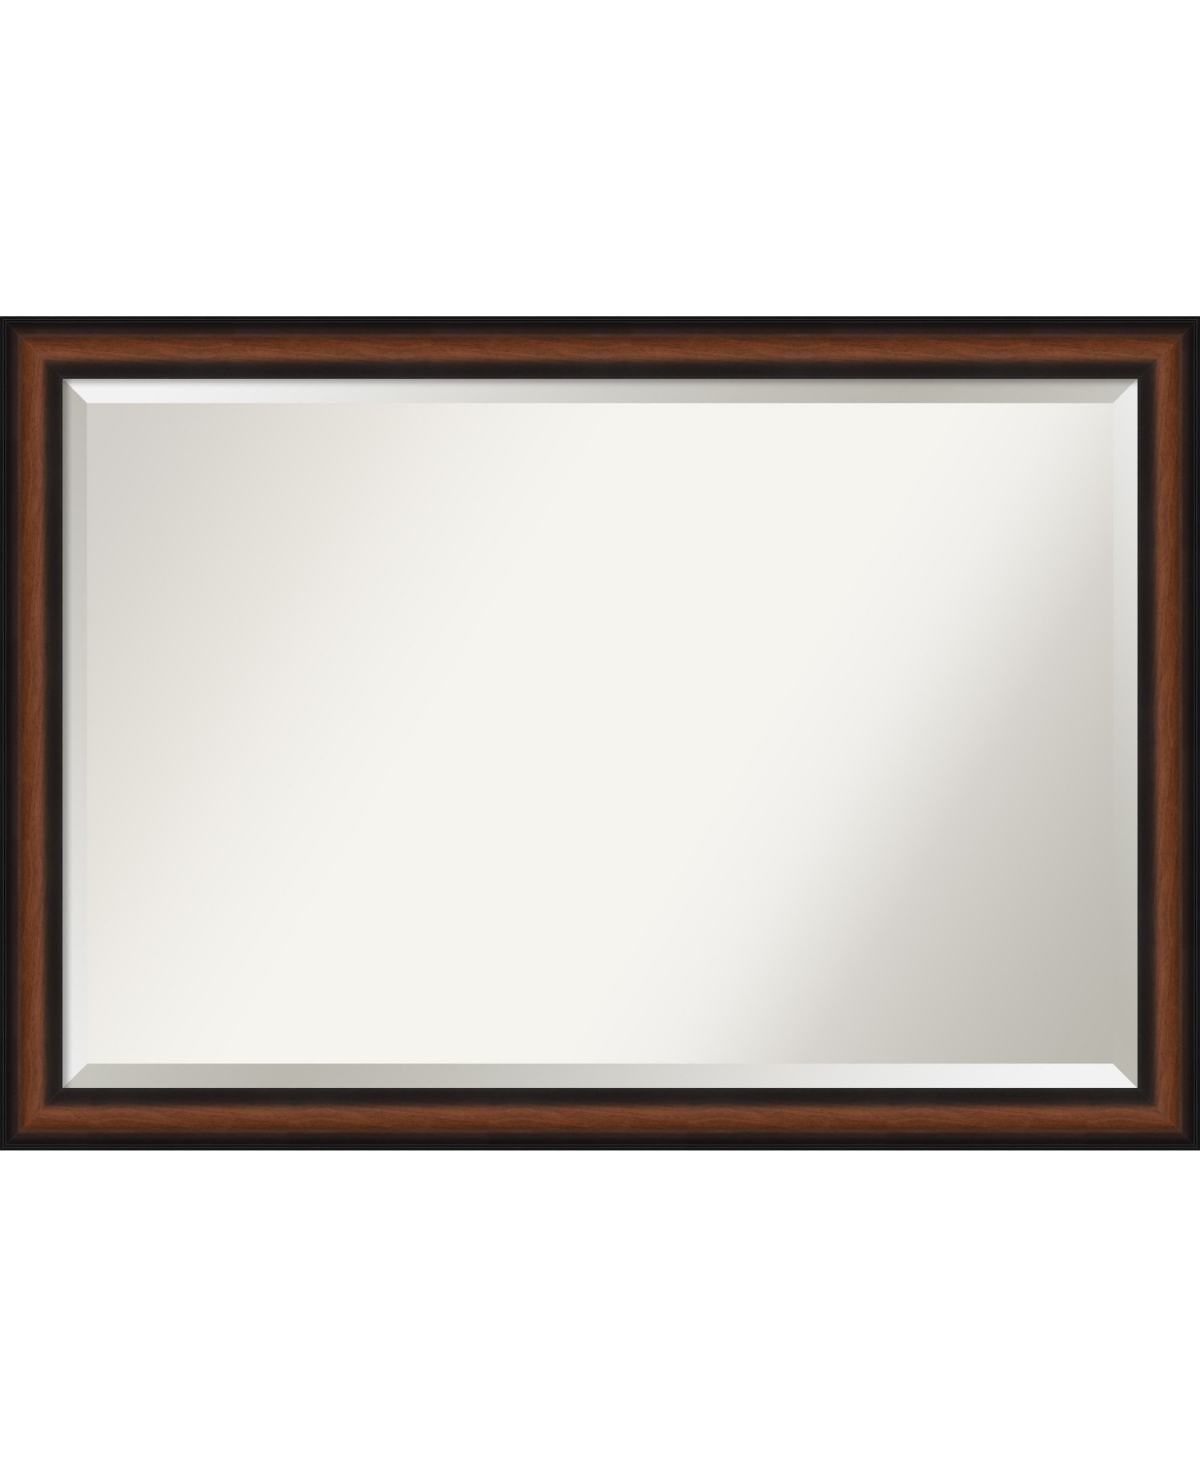 Yale Framed Bathroom Vanity Wall Mirror, 39.38" x 27.38" - Dark Brown